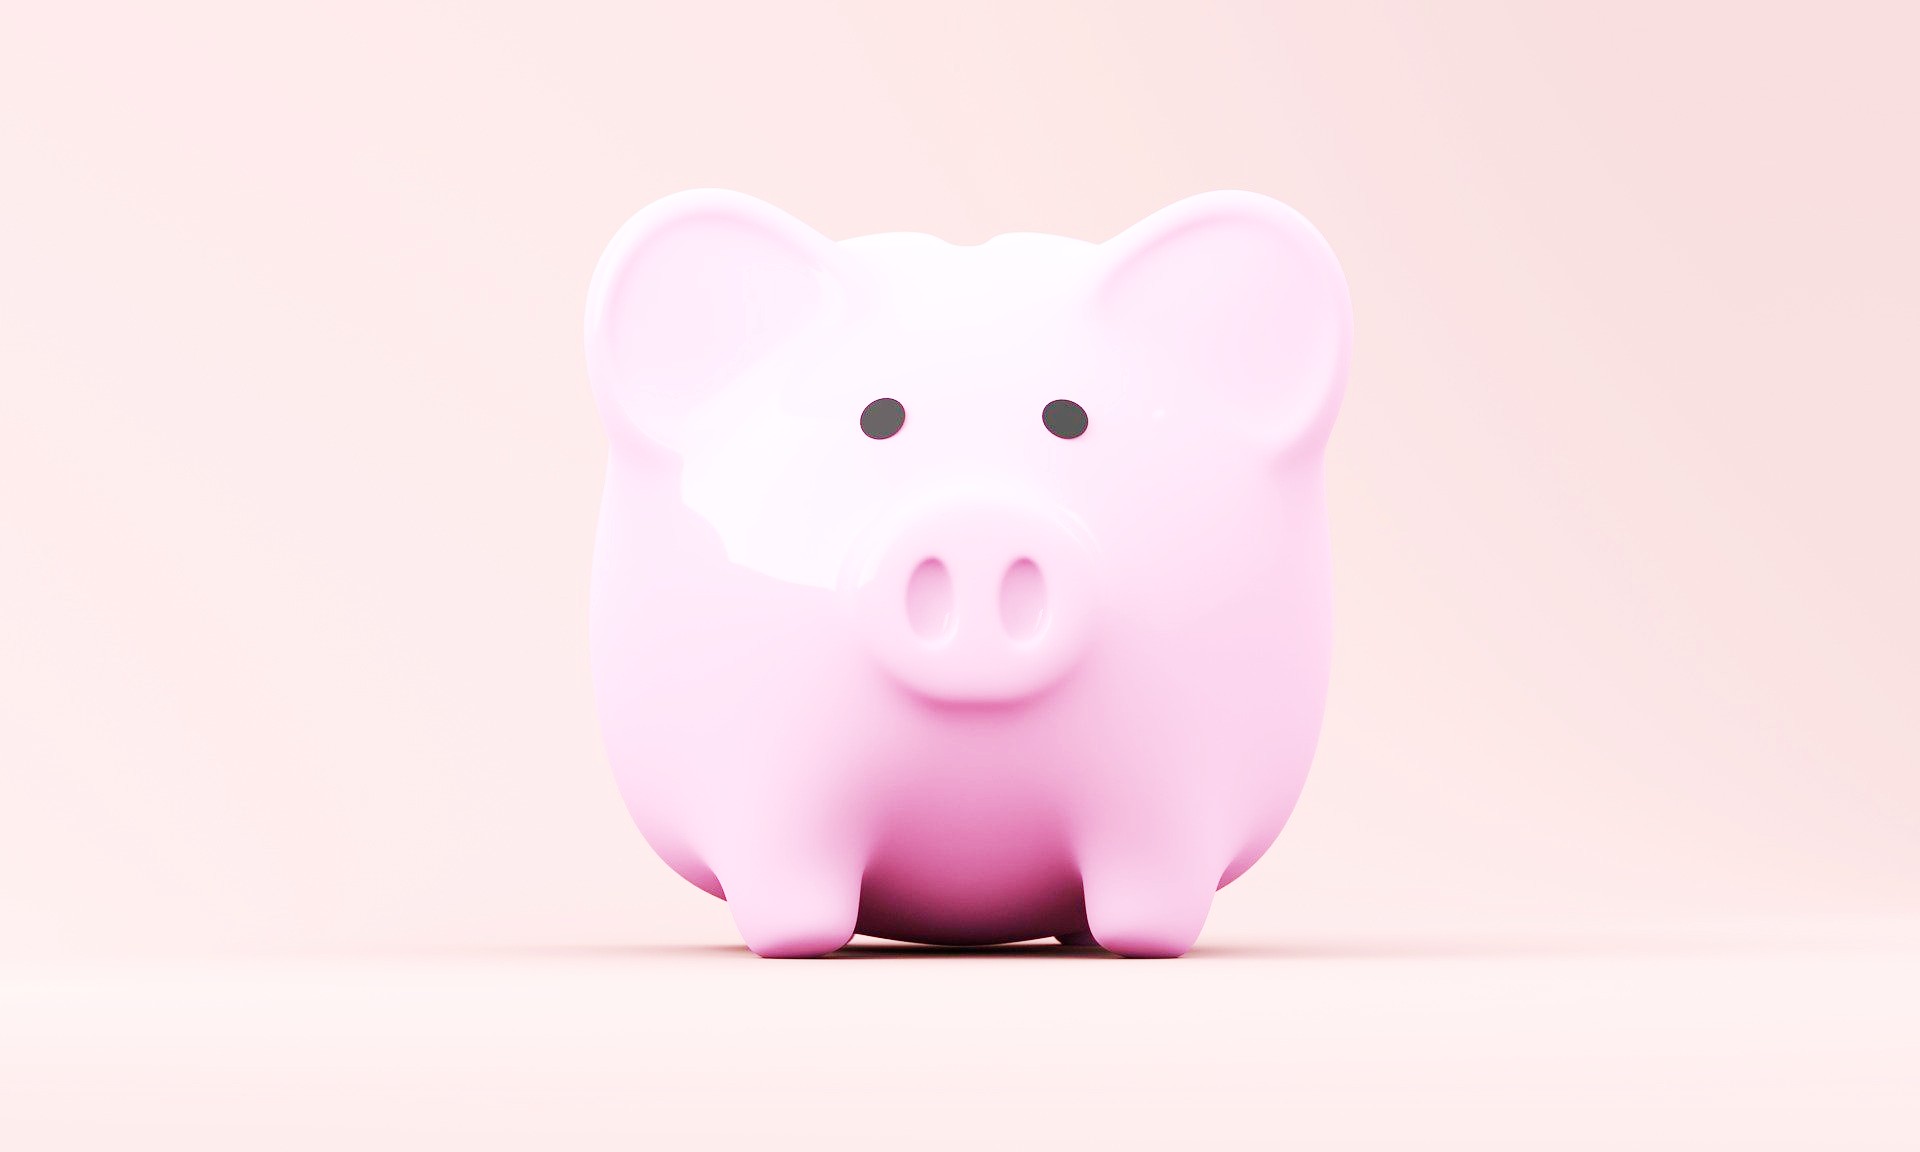 <img src="pink.jpg" alt="pink piggy bank "/> 